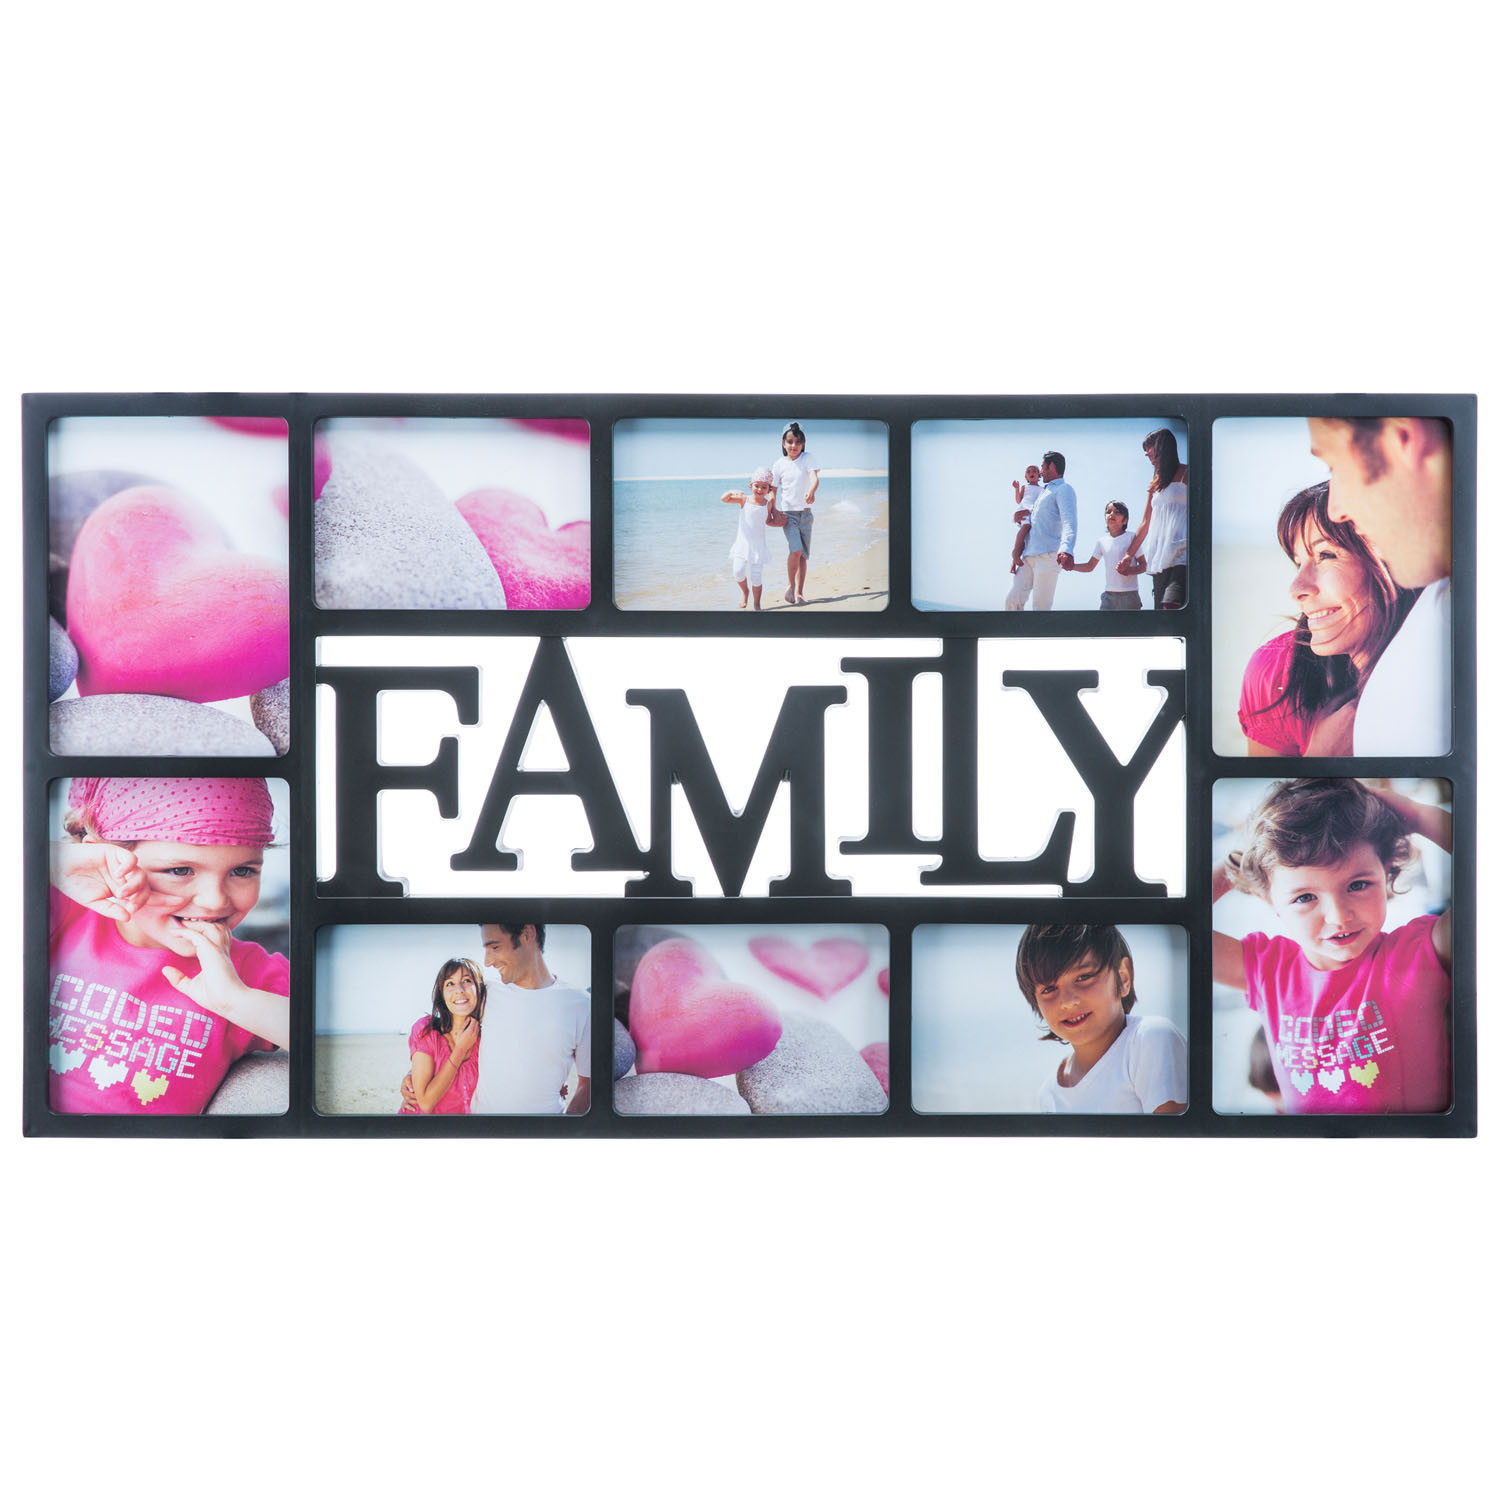 Geschenkideen Für Familien
 Bilderrahmen Family XXL für 10 wunderschöne Familien Fotos